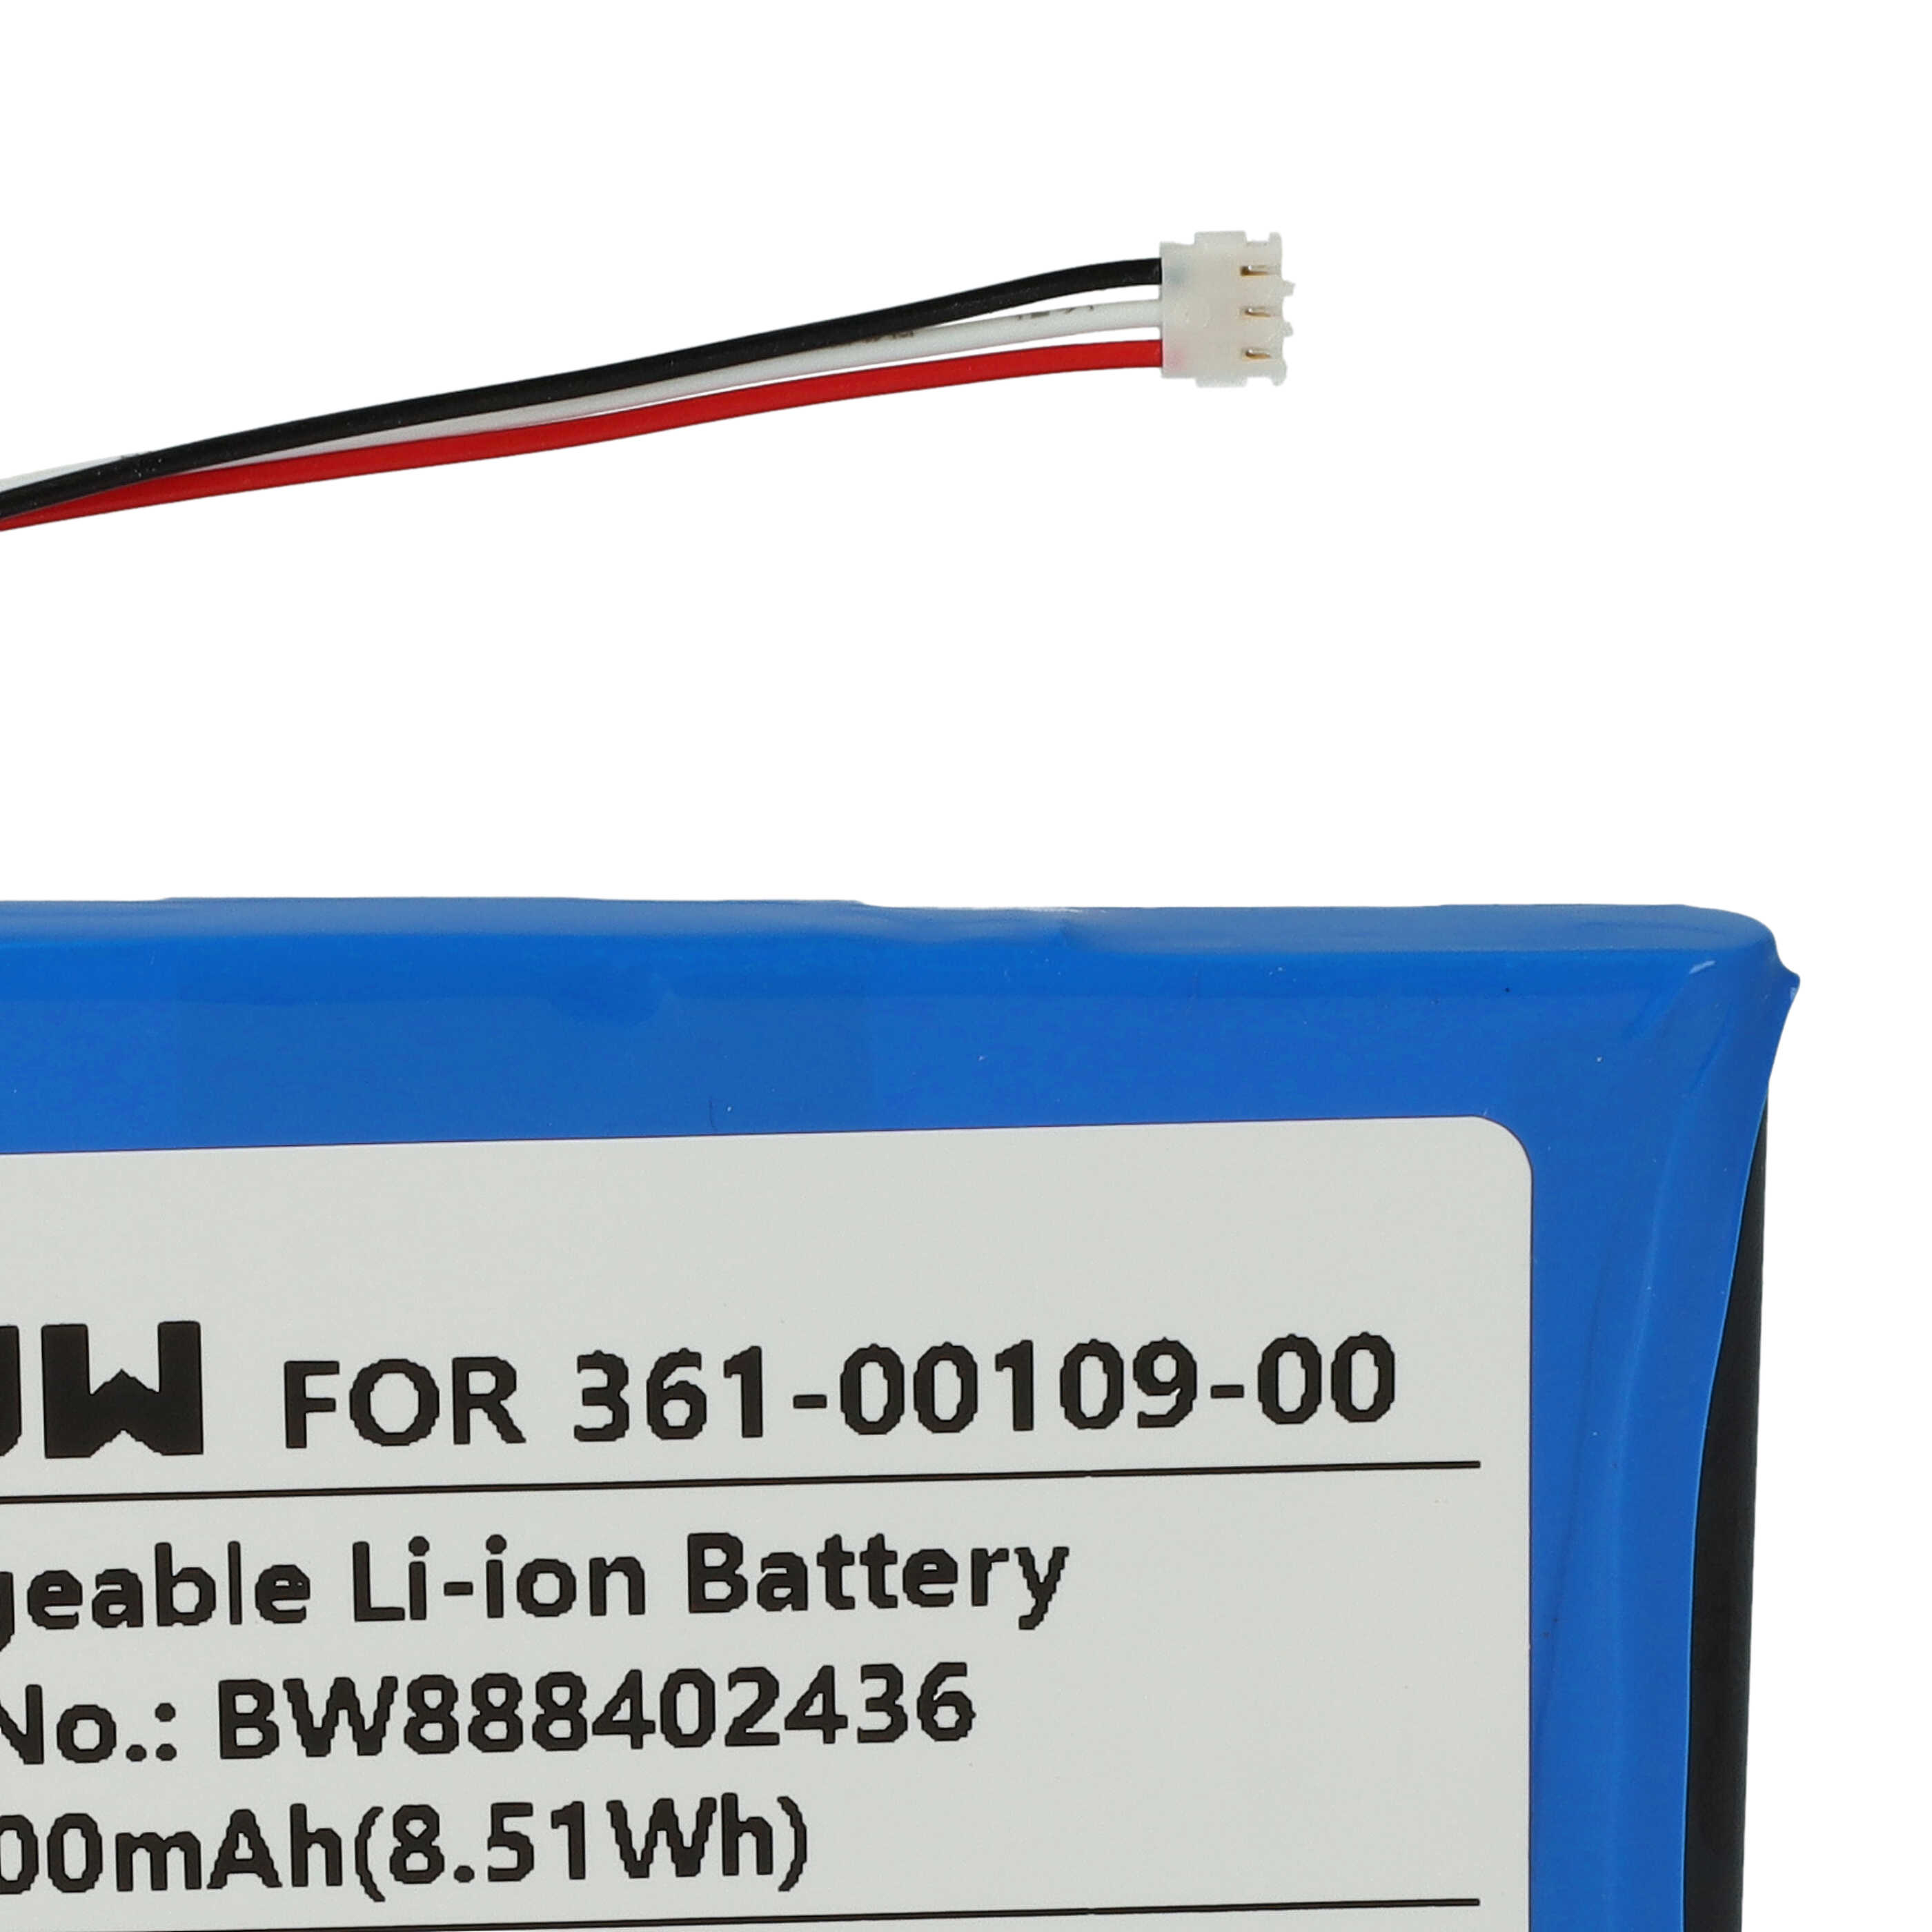 Batterie remplace Garmin 361-00109-05, 361-00109-00 pour navigation GPS - 2300mAh 3,7V Li-ion